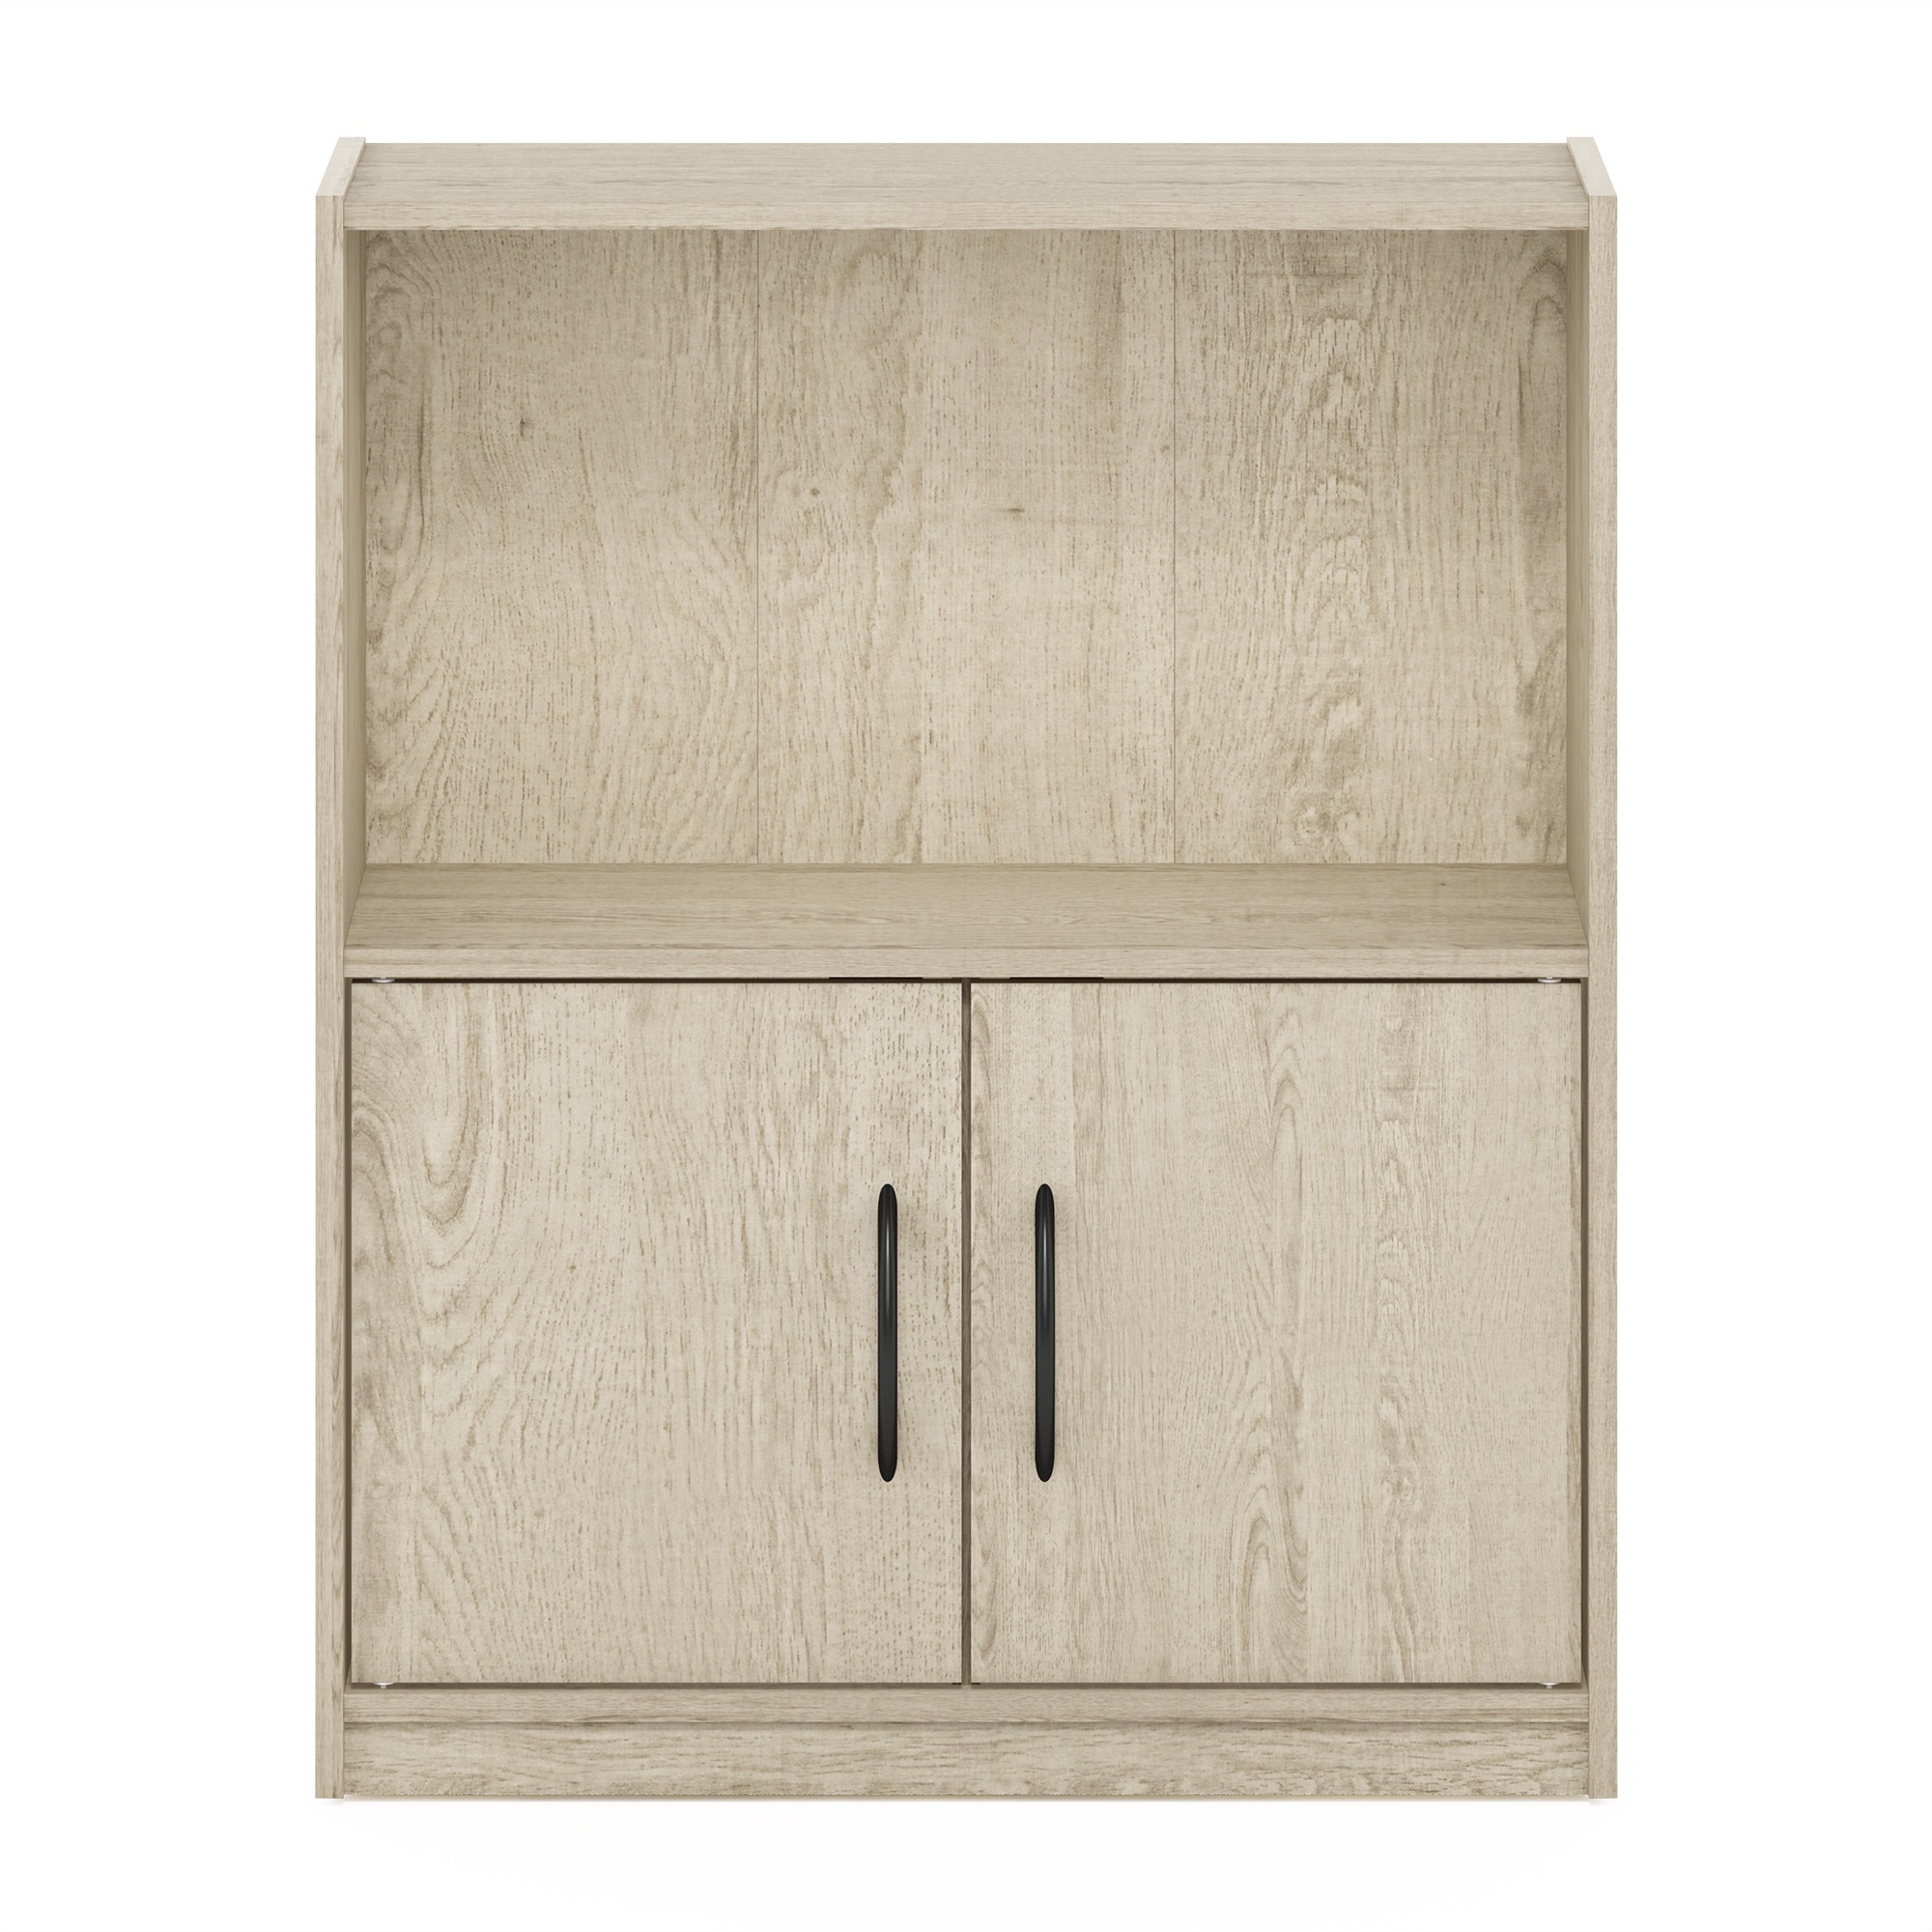 Furinno Gruen 2-Tier Open Shelf Bookcase with 2 Doors Storage Cabinet, Metropolitan Pine